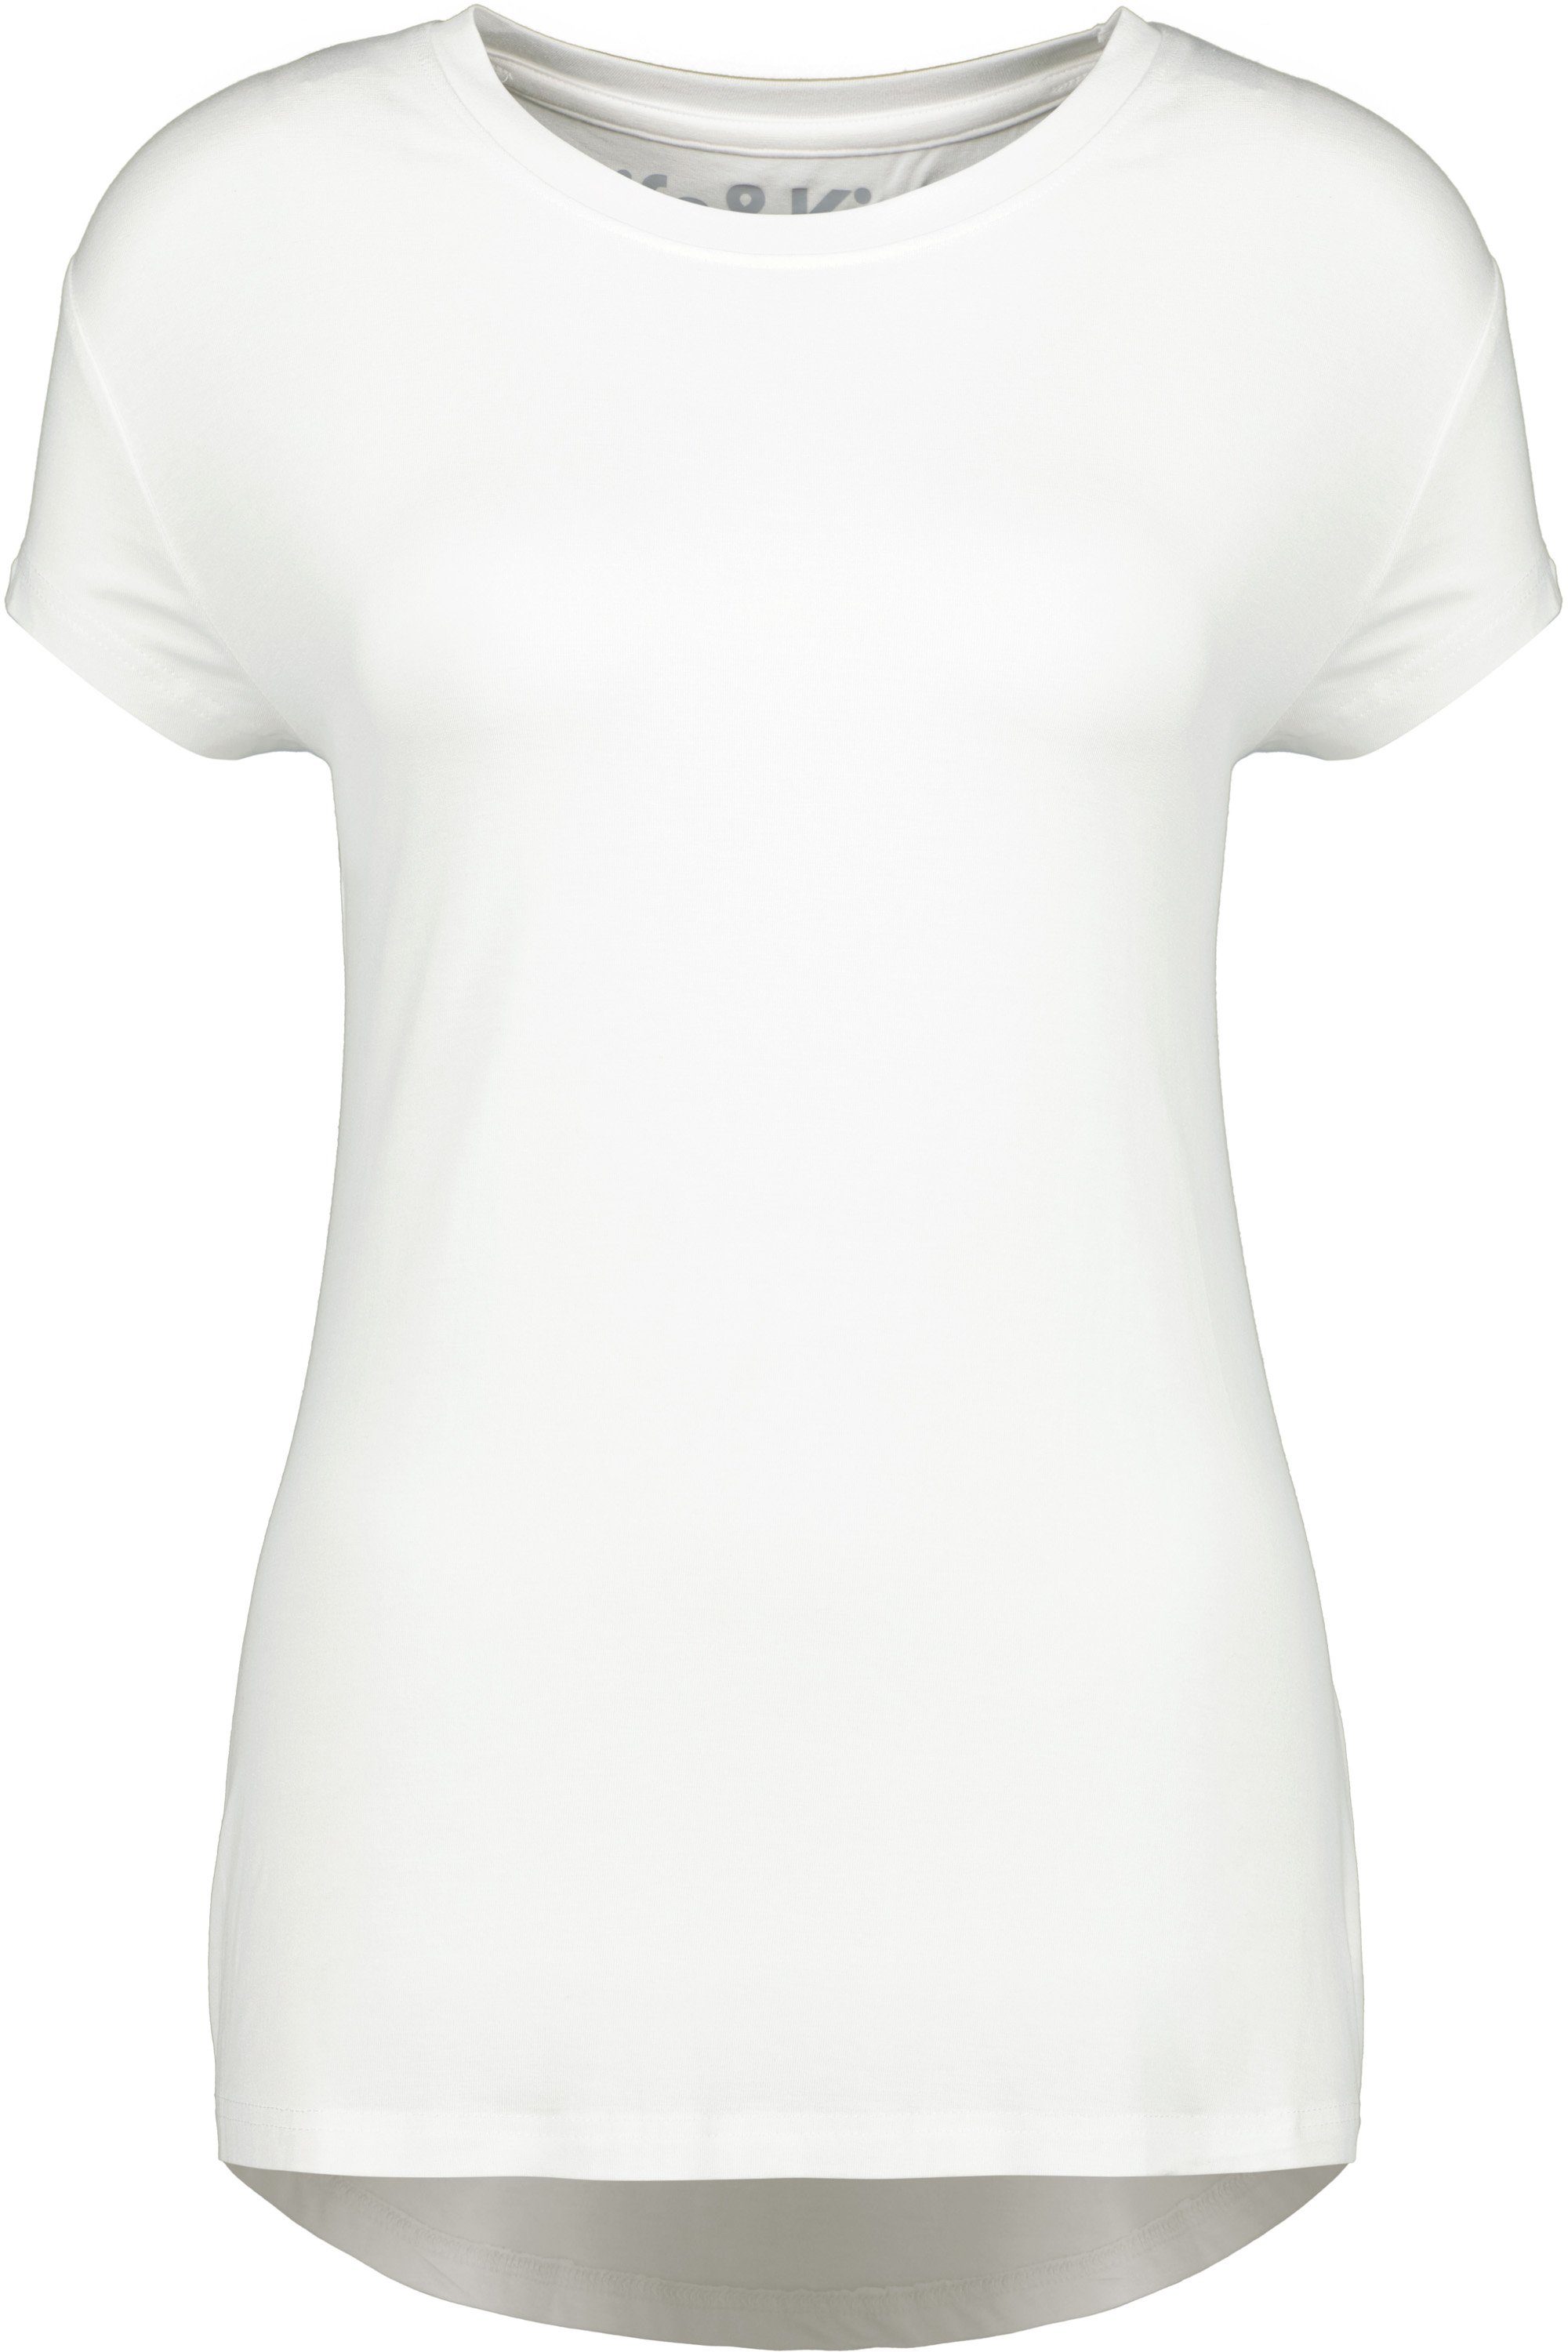 A Rundhalsshirt Shirt Kurzarmshirt, Damen MimmyAK white Kickin Alife & Shirt